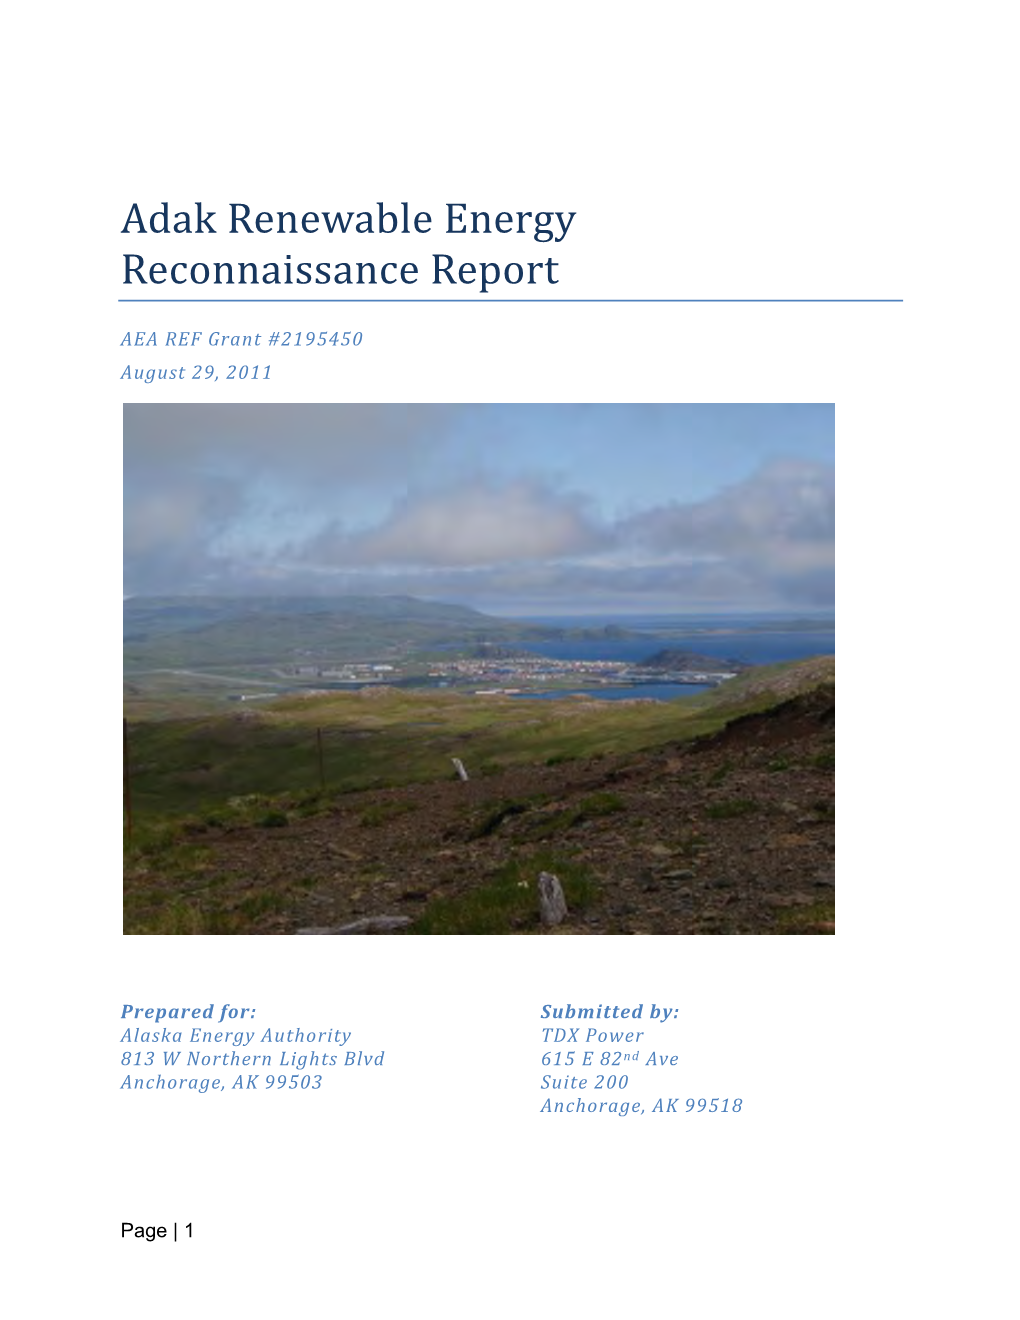 Adak Renewable Energy Reconnaissance Report